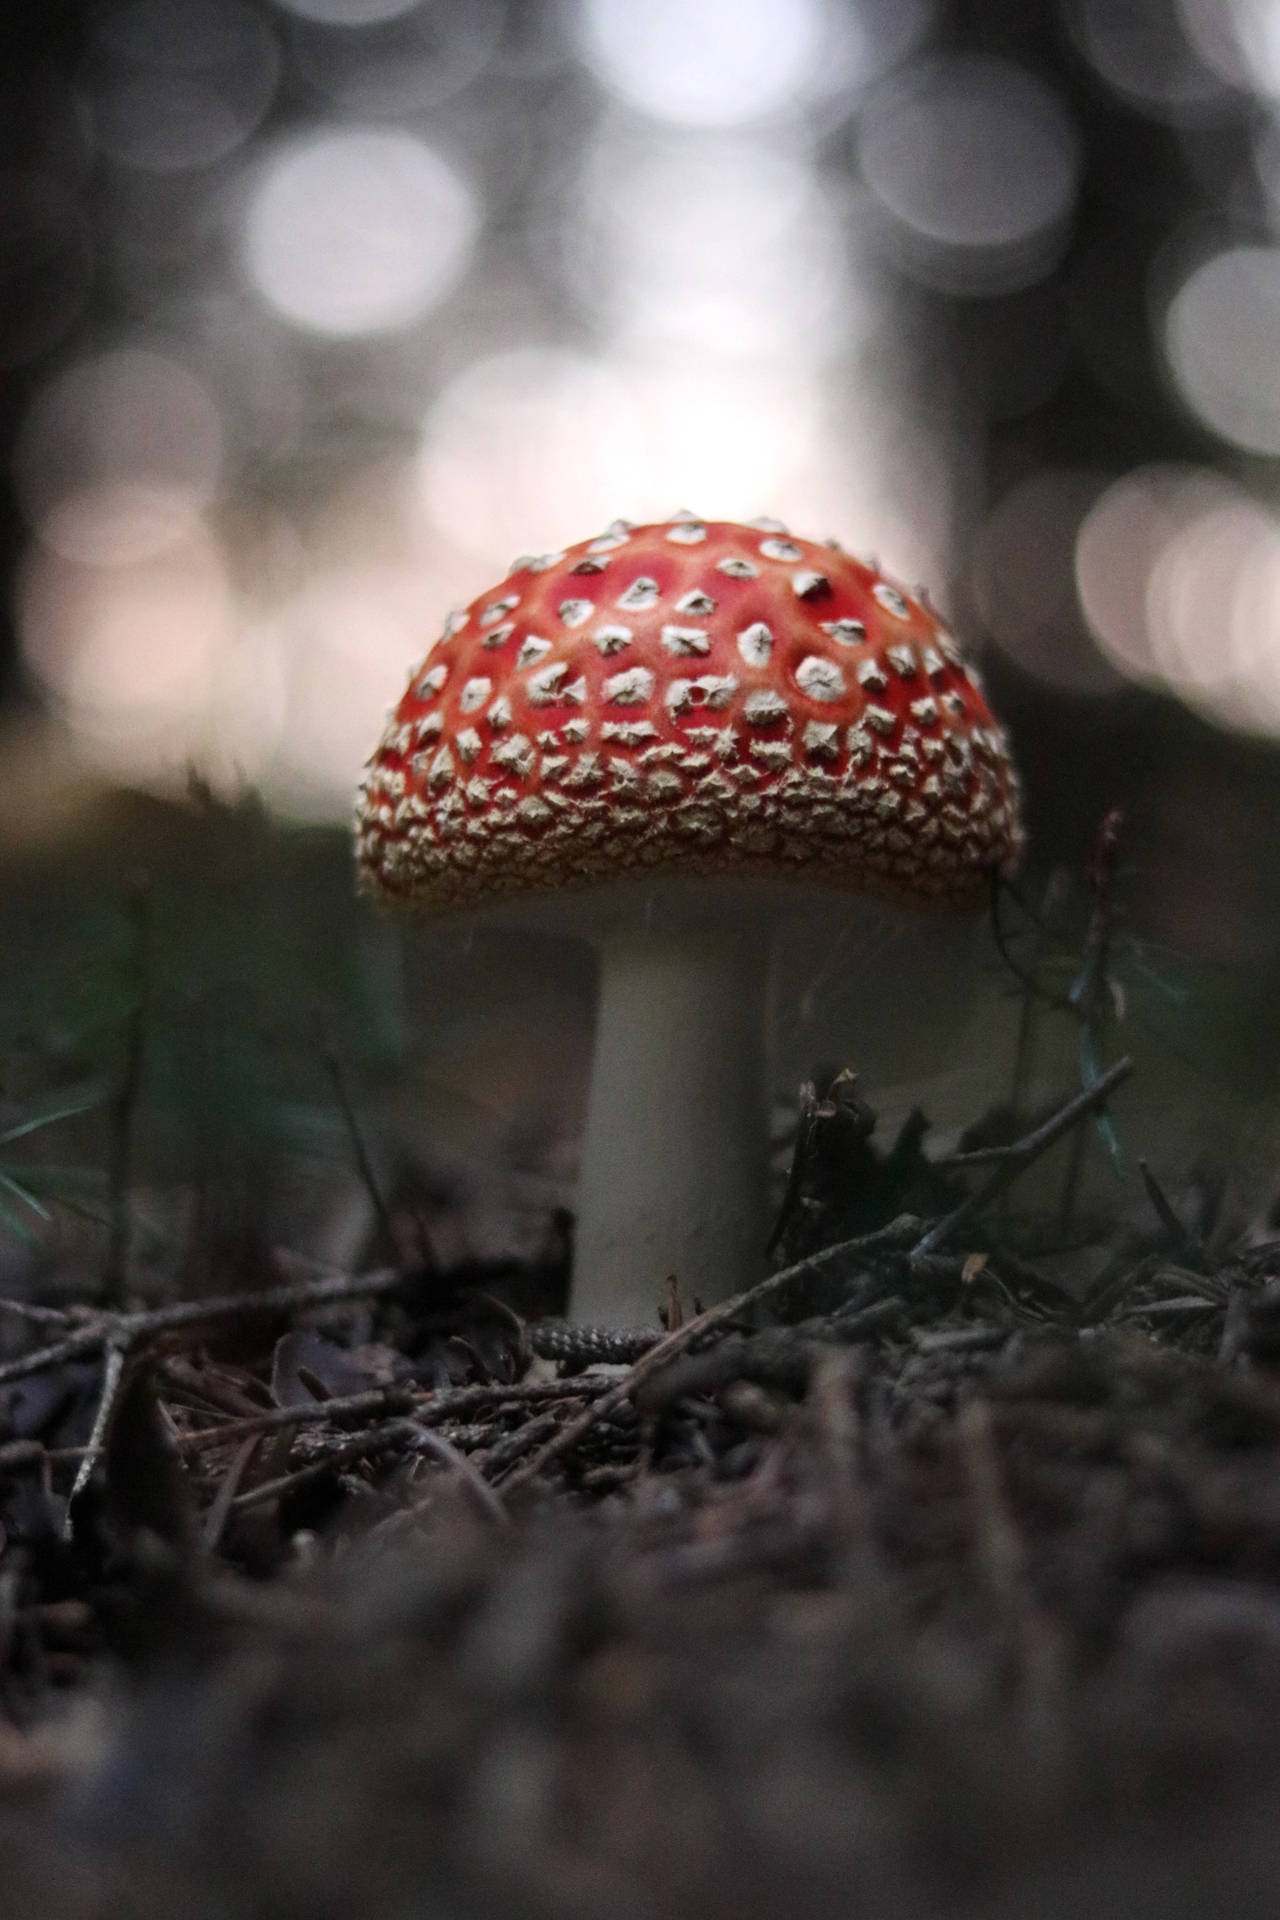 Cute Red Mushroom Growing On Soil Background